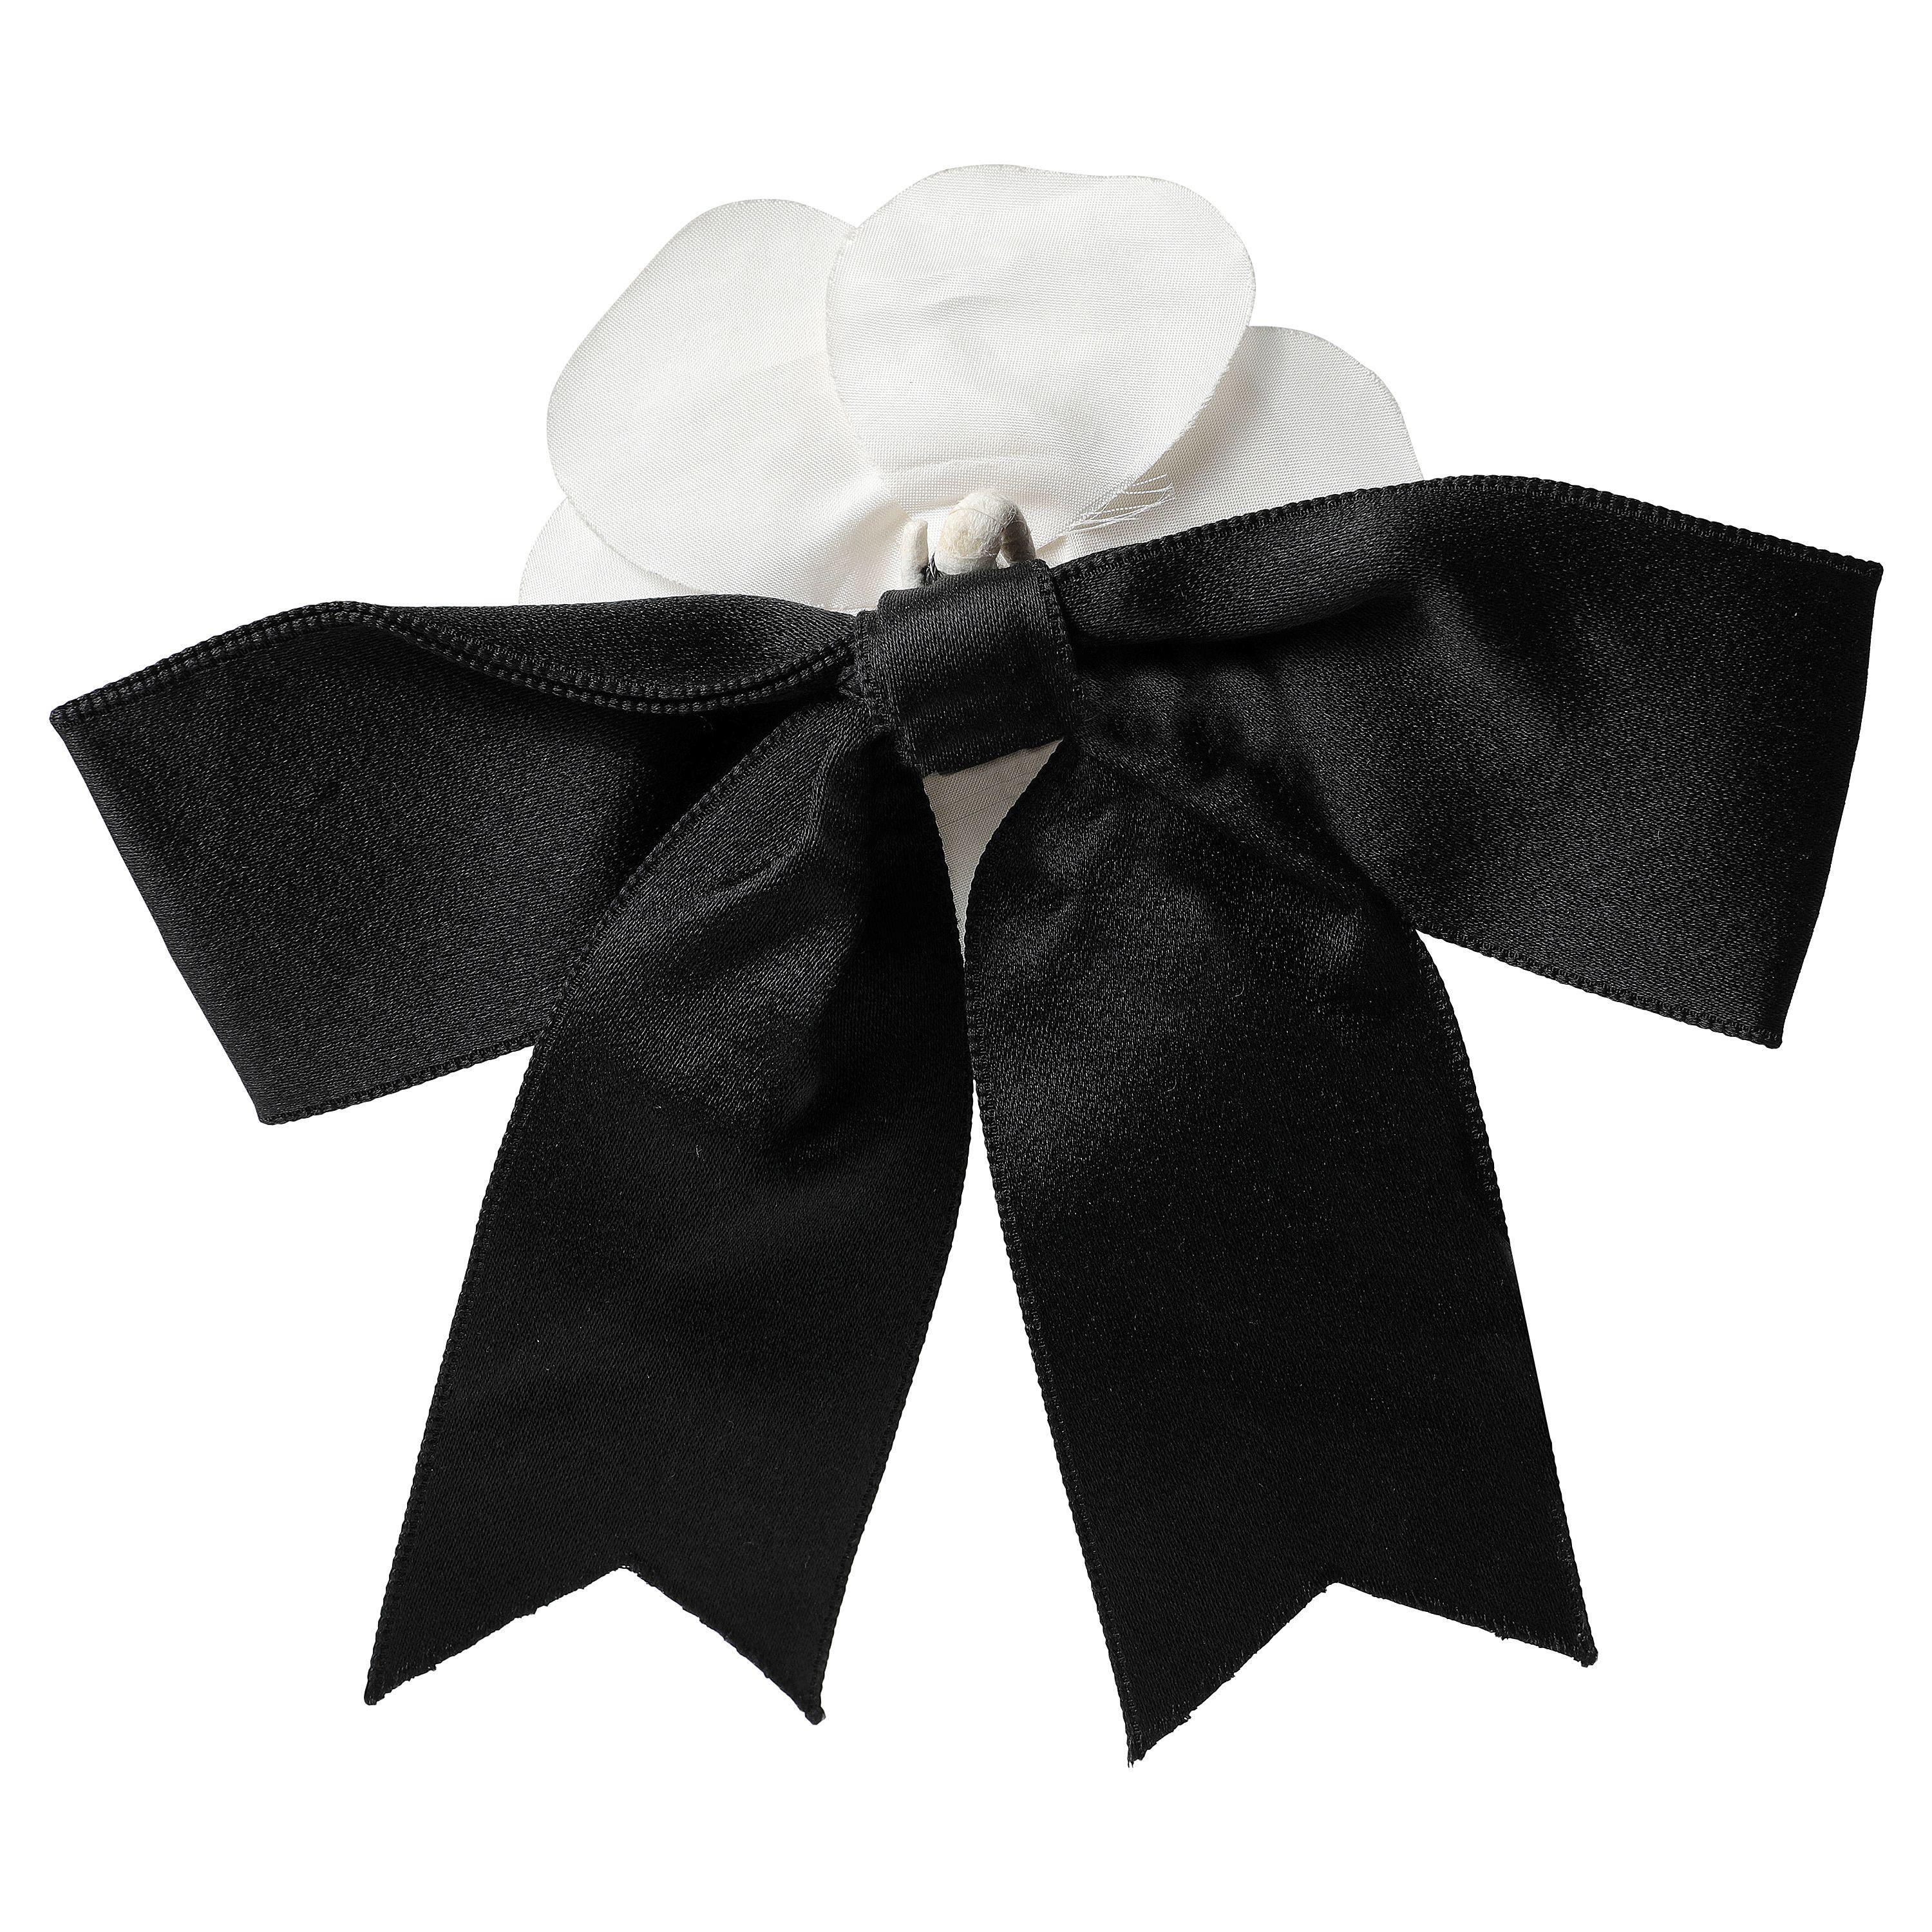 Cette authentique épingle à nœud Camelia noir et blanc de Chanel est en parfait état. Grand nœud en soie noire avec fleur de camélia blanche.  

PBF 13002
